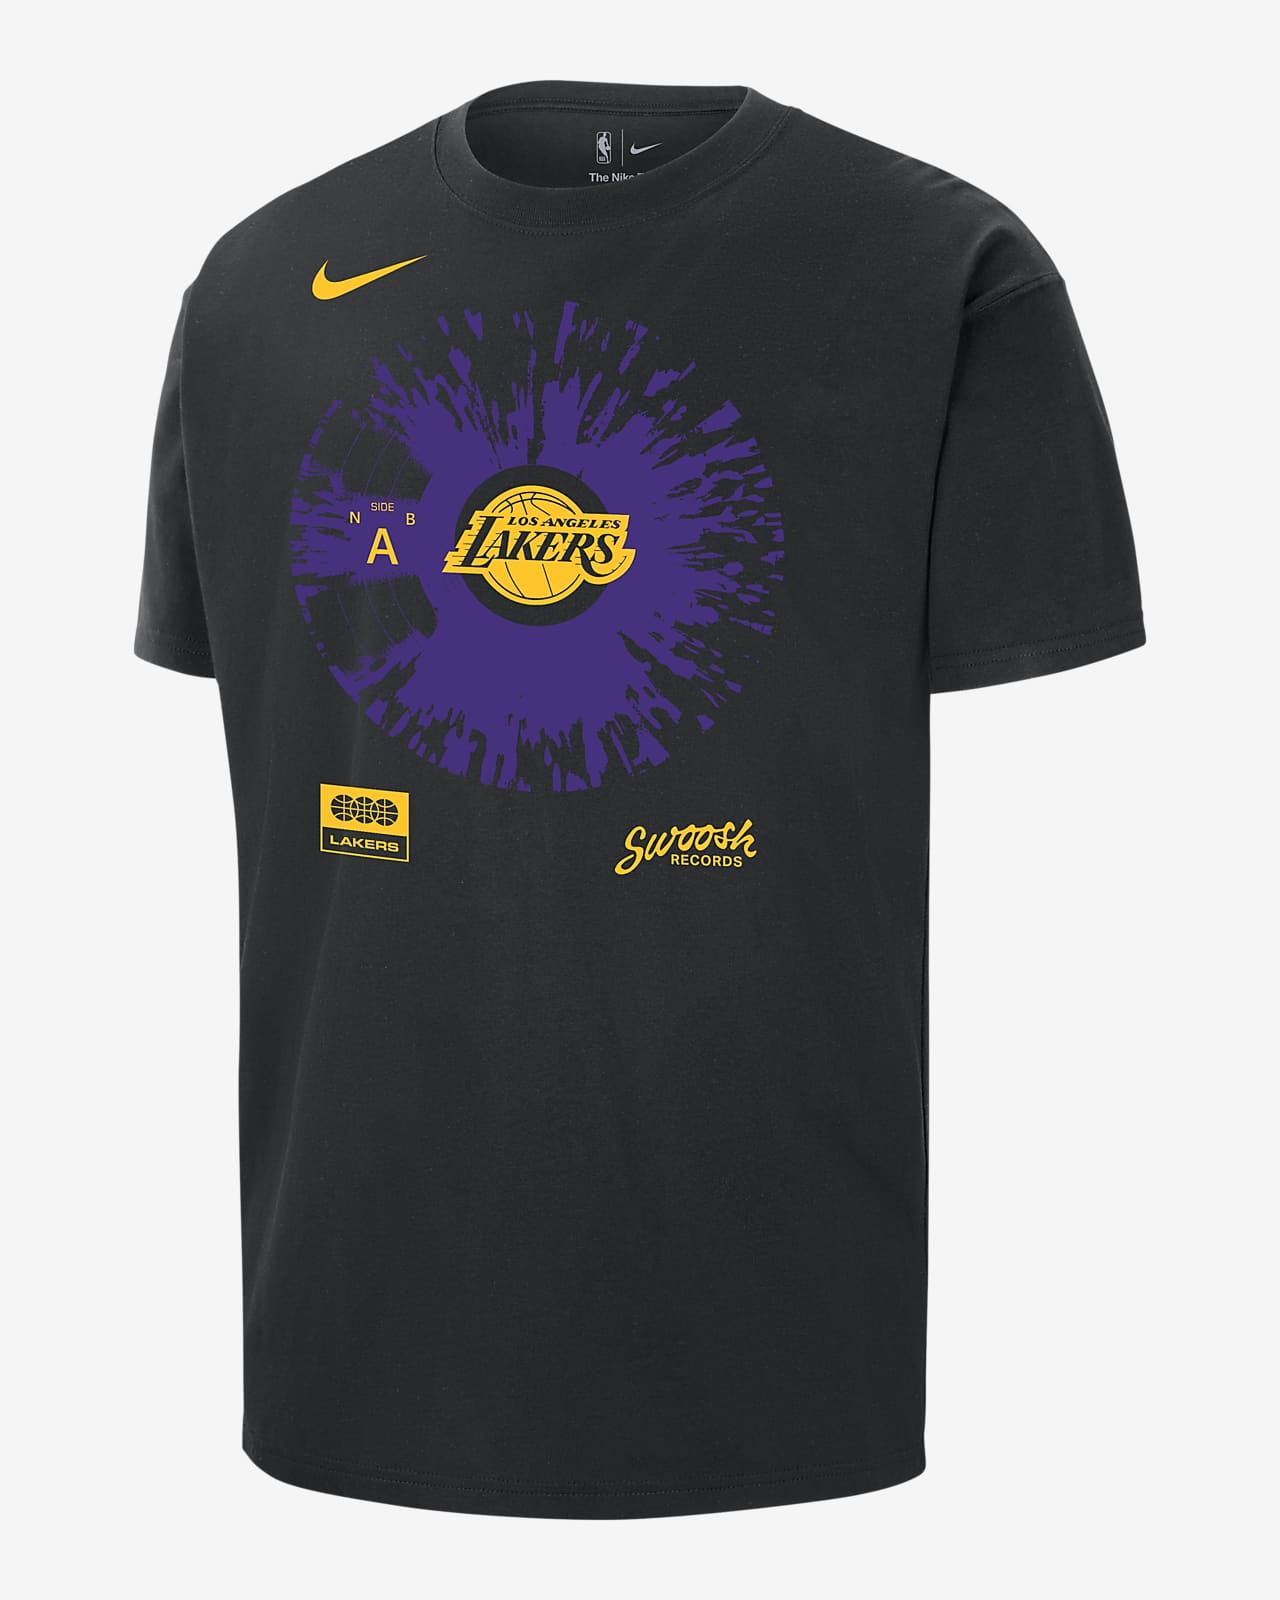 Playera Nike de la NBA para hombre Los Angeles Lakers Max90